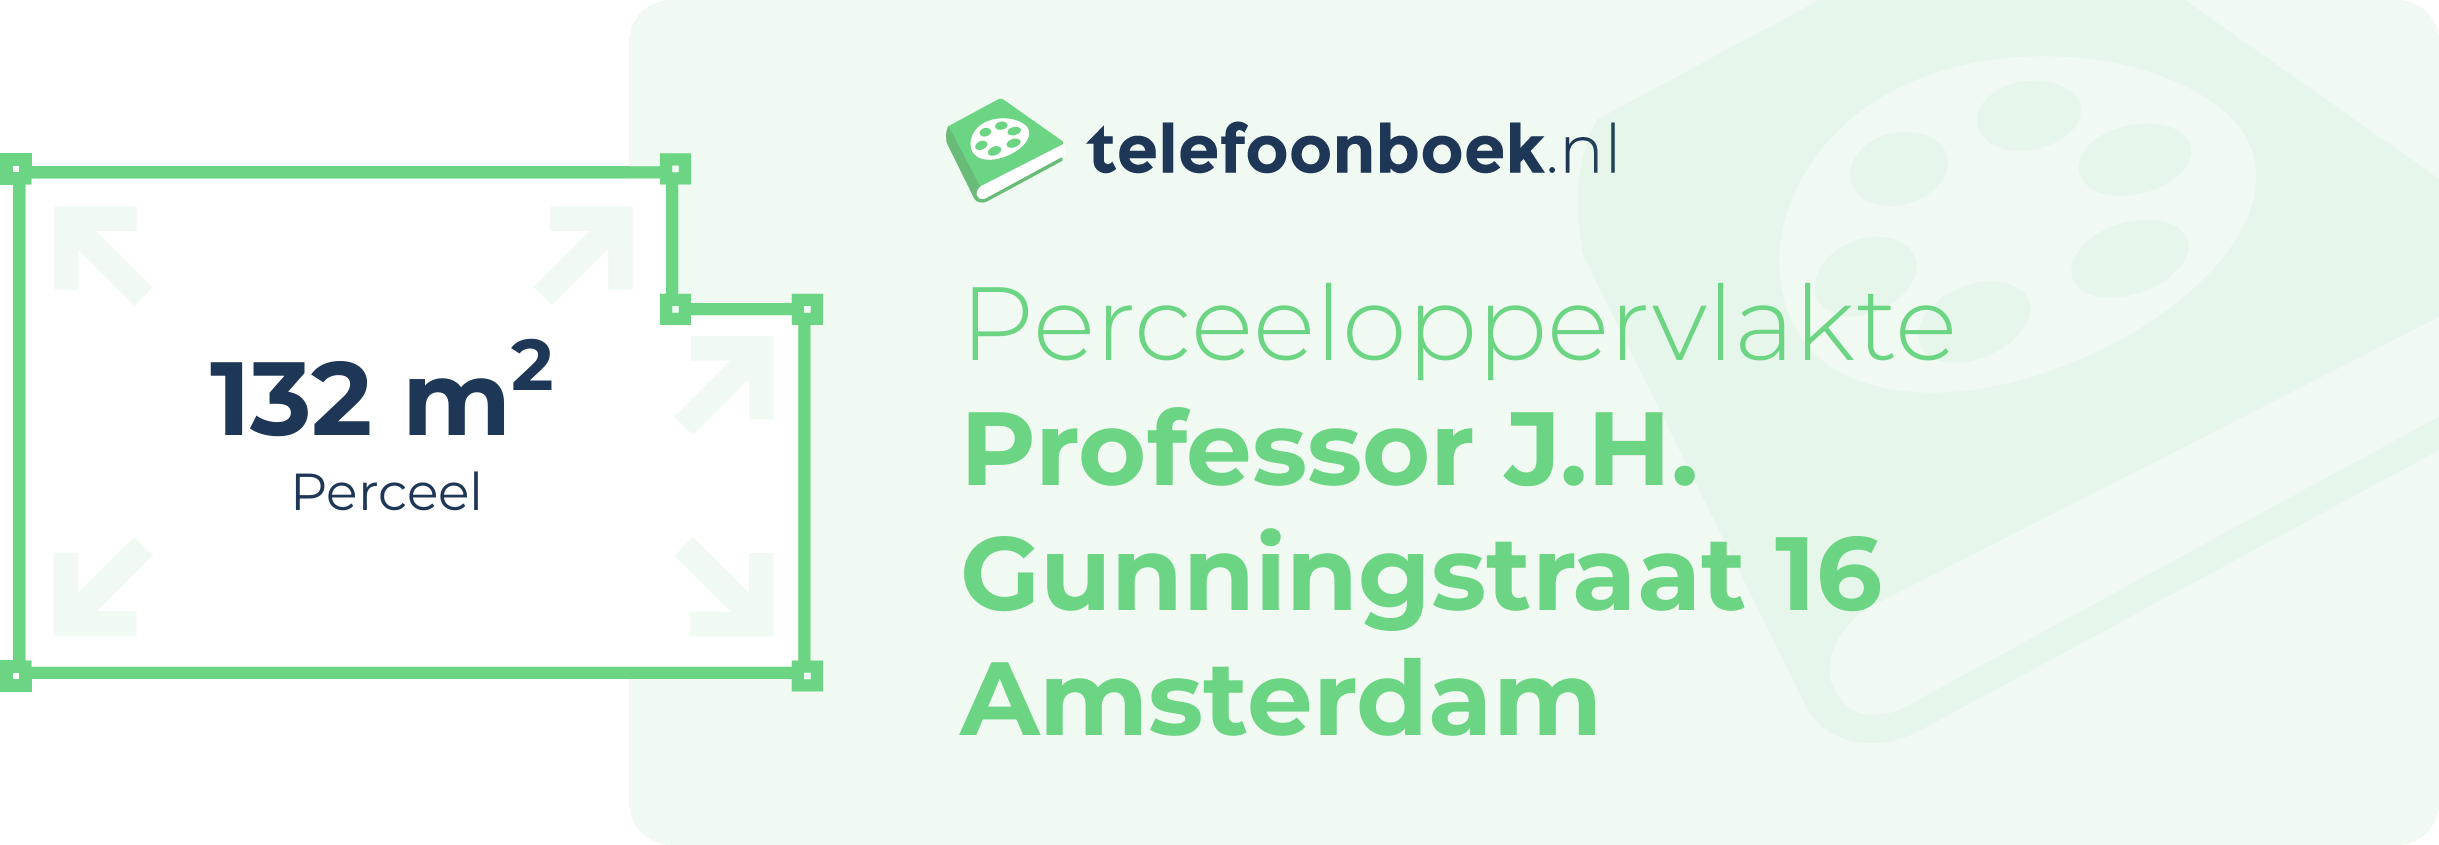 Perceeloppervlakte Professor J.H. Gunningstraat 16 Amsterdam